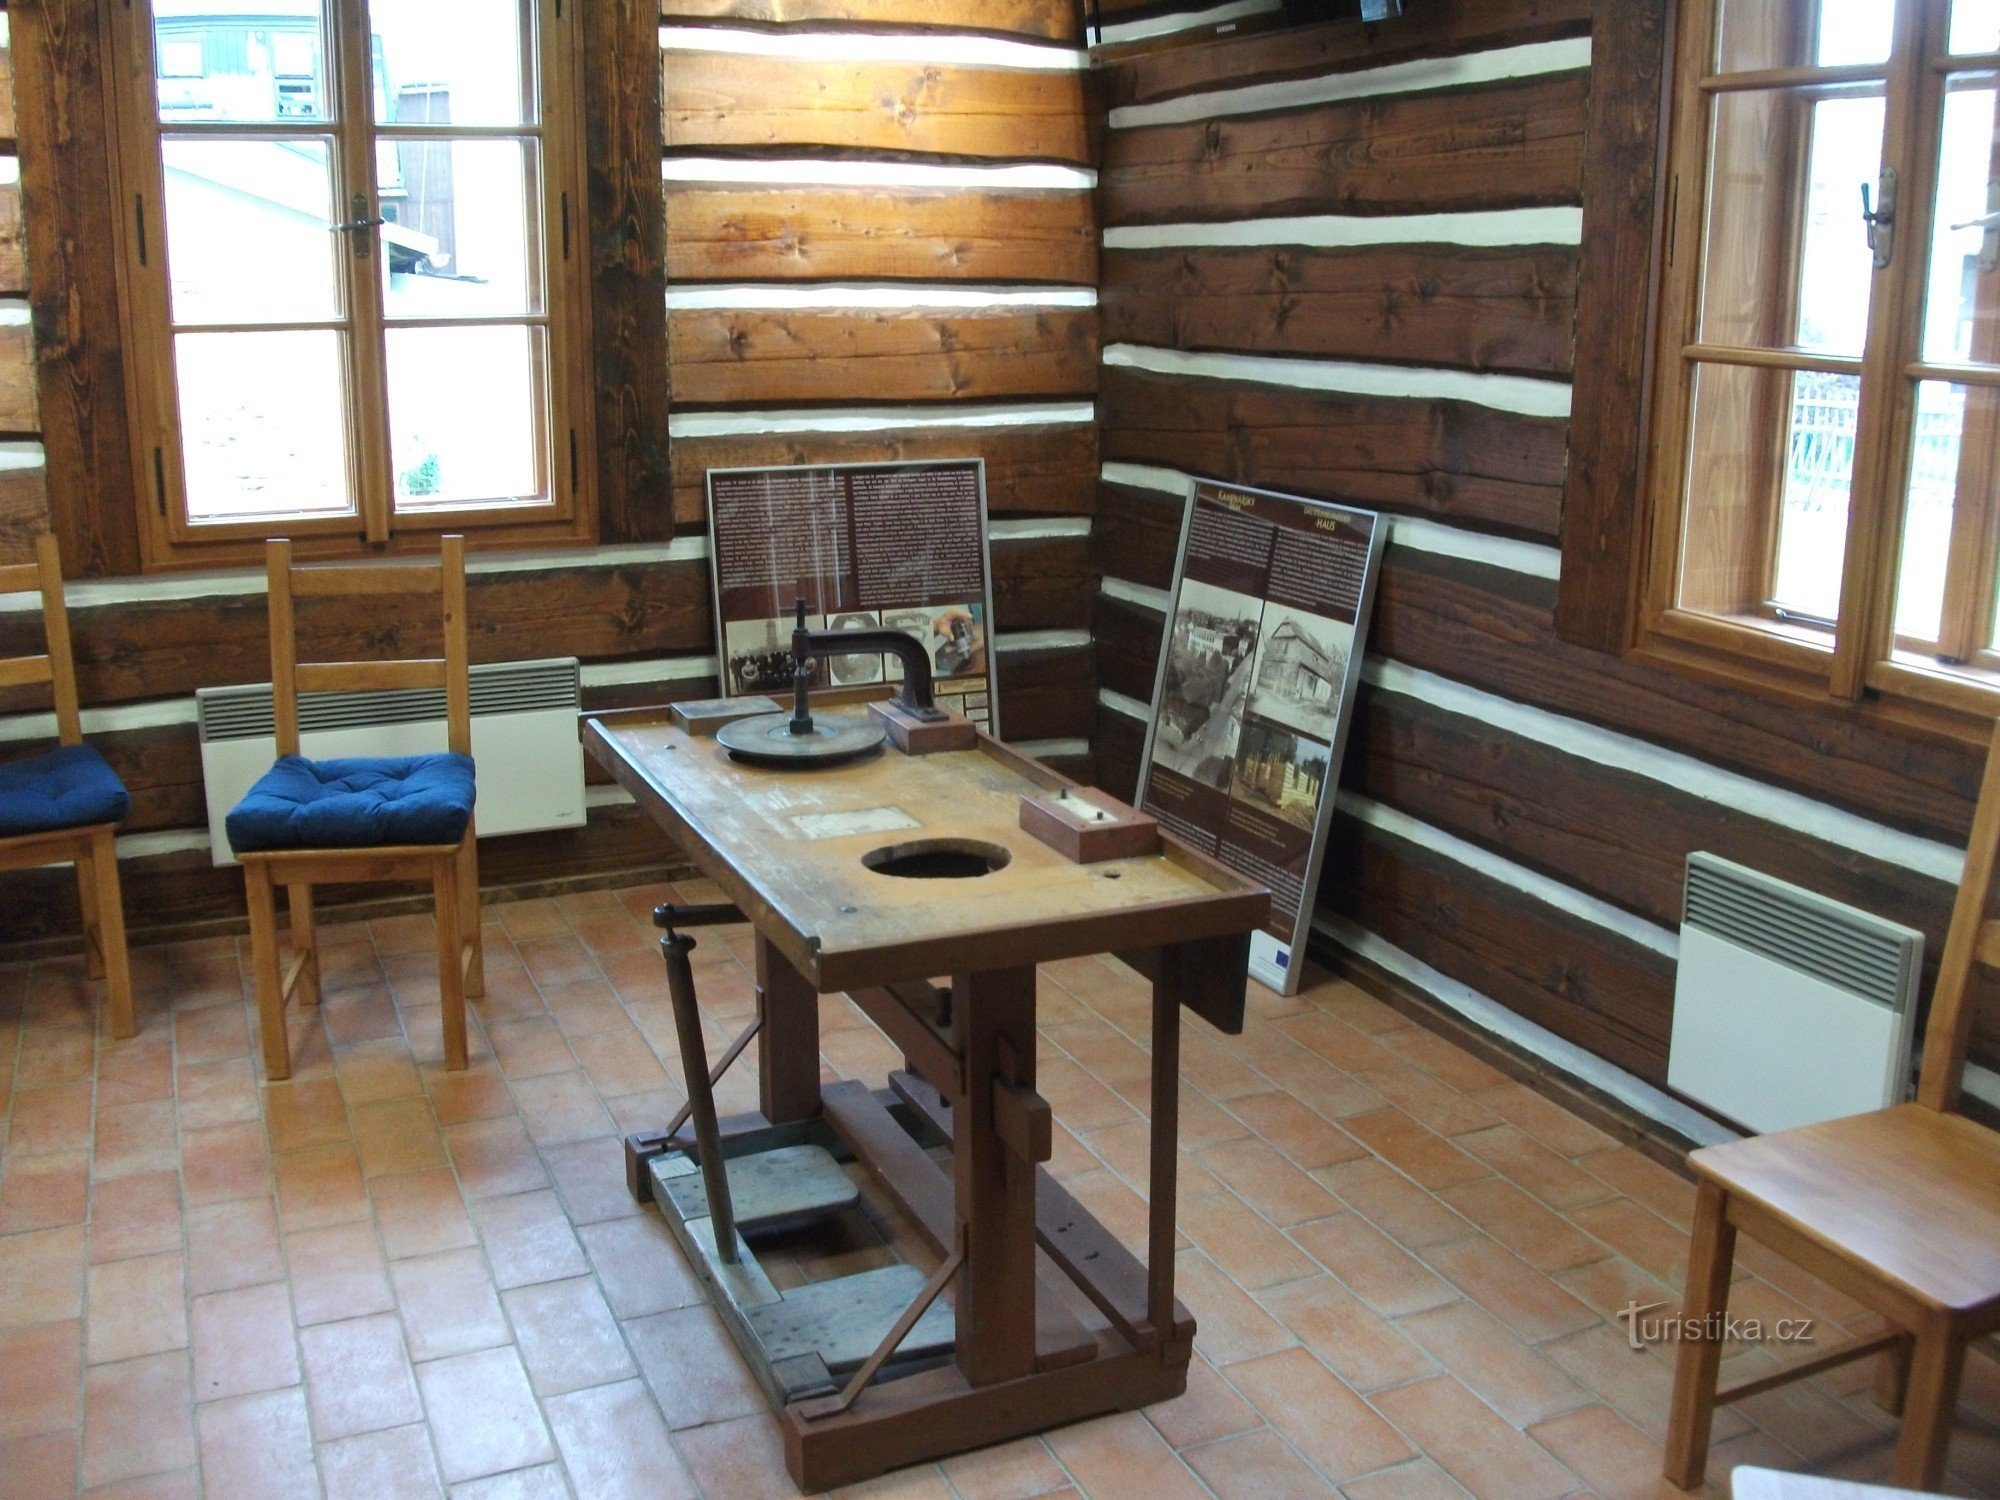 U unutrašnjosti Kamene kuće nalazi se i radni stol s alatima za obradu